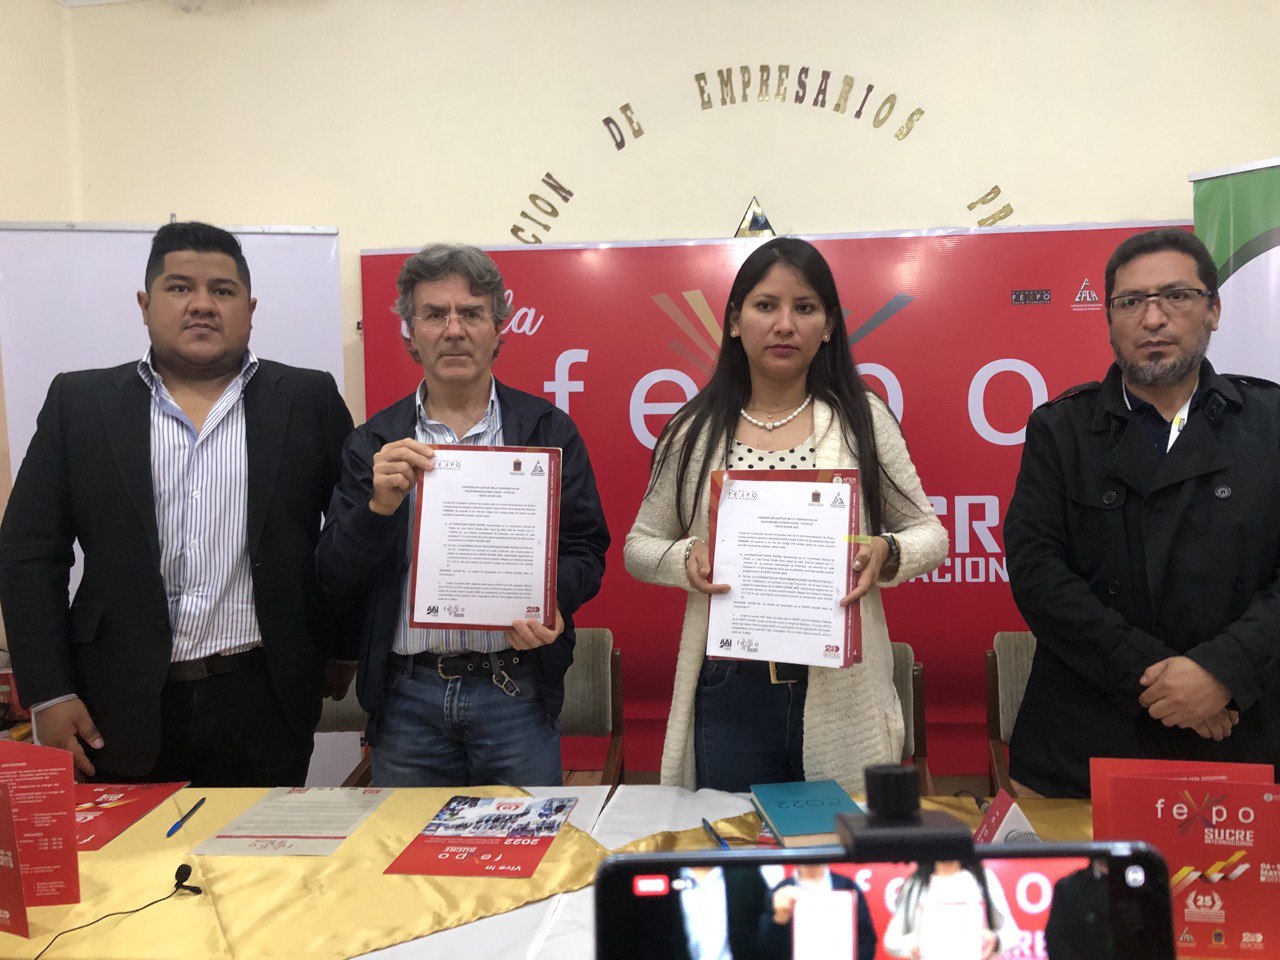 COTES se suma como auspiciador de la Fexpo Sucre 2022